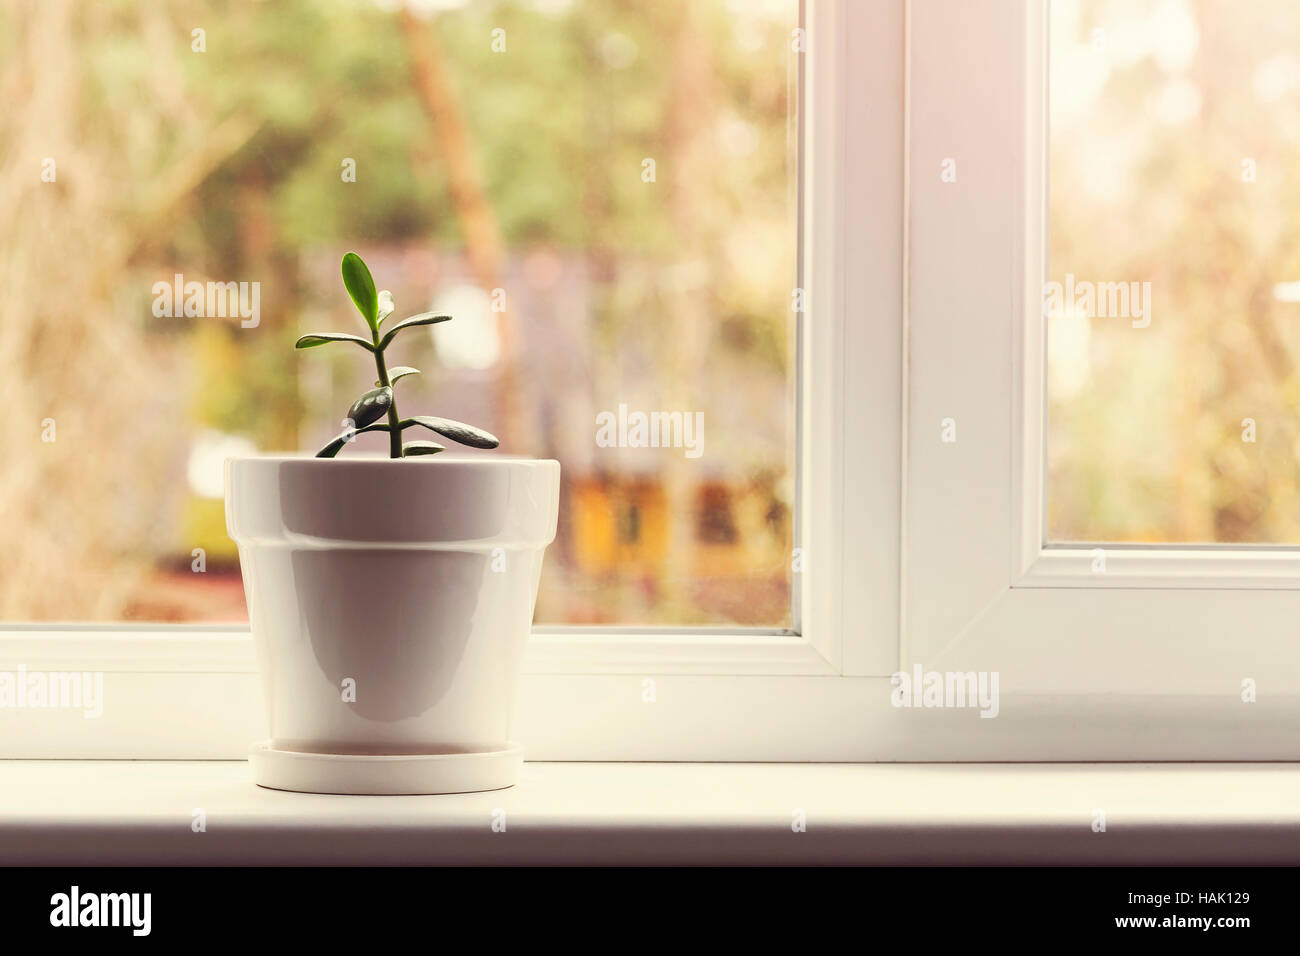 Petite plante crassula en pot sur un rebord de fenêtre Banque D'Images